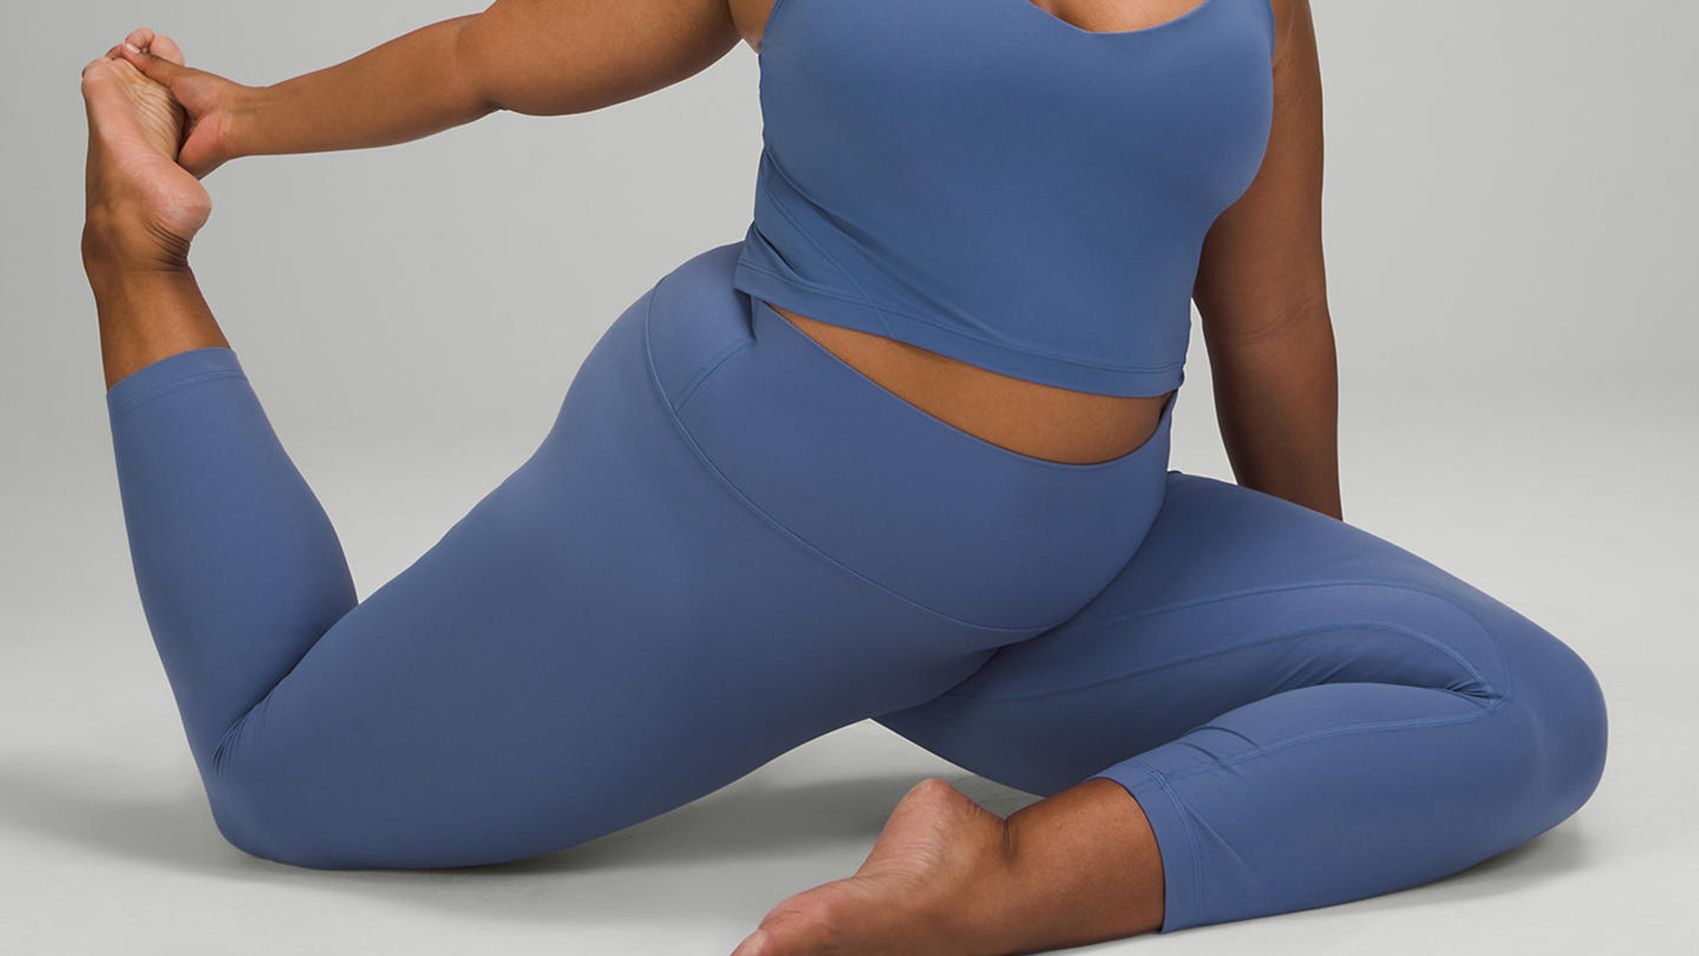 Lululemon Black Friday deals 2021: Yoga mats, Wunder Unders and more